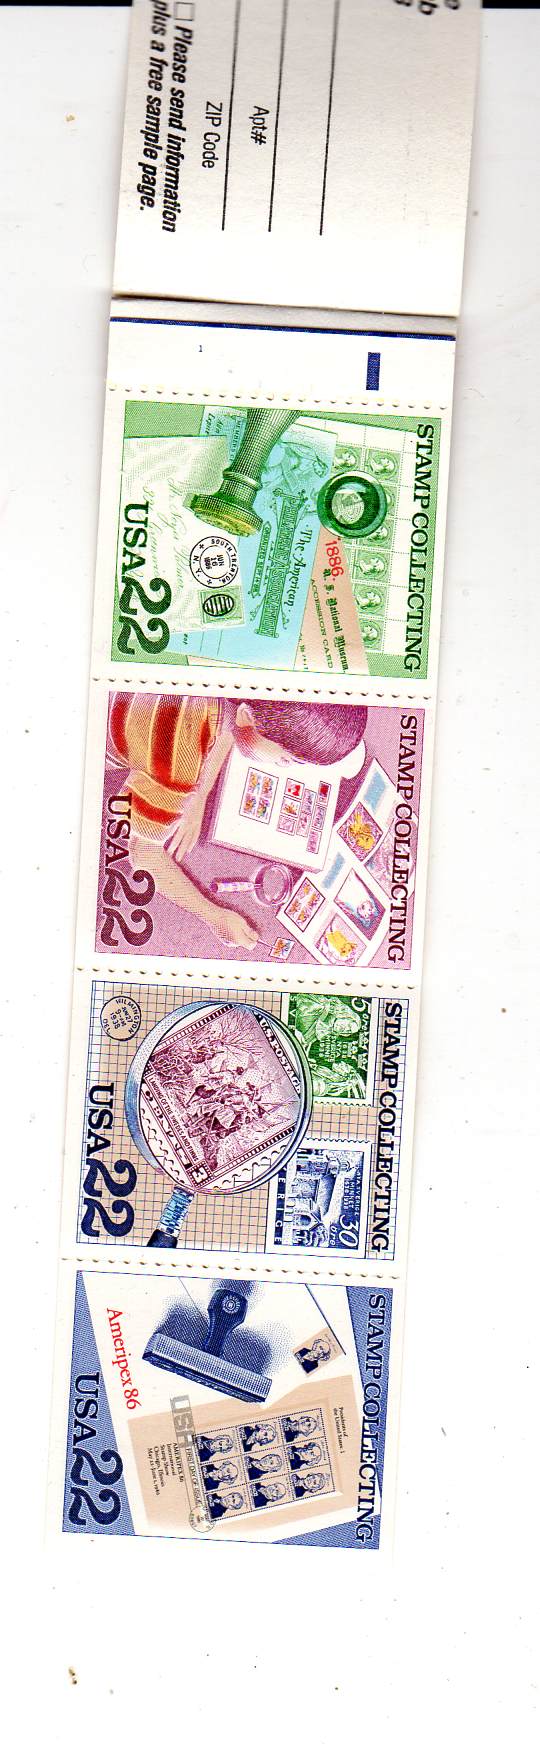 Bilett til frimerkeshow Chicago 1986 med 8 stk 22 cents frimerker